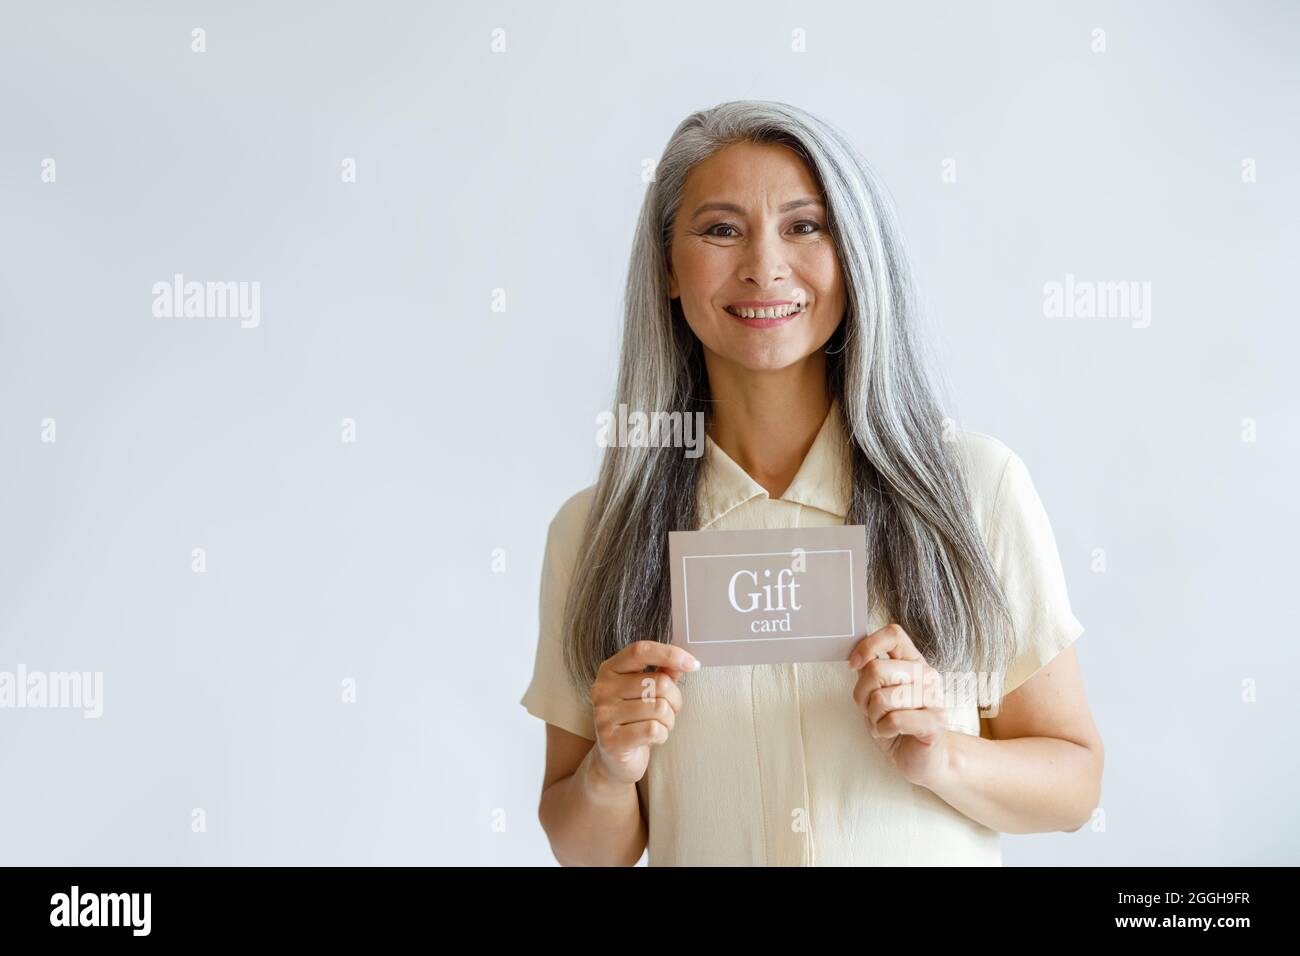 Lächelnde grauhaarige Asiatin hält den Geschenkgutschein auf hellem Hintergrund Stockfoto